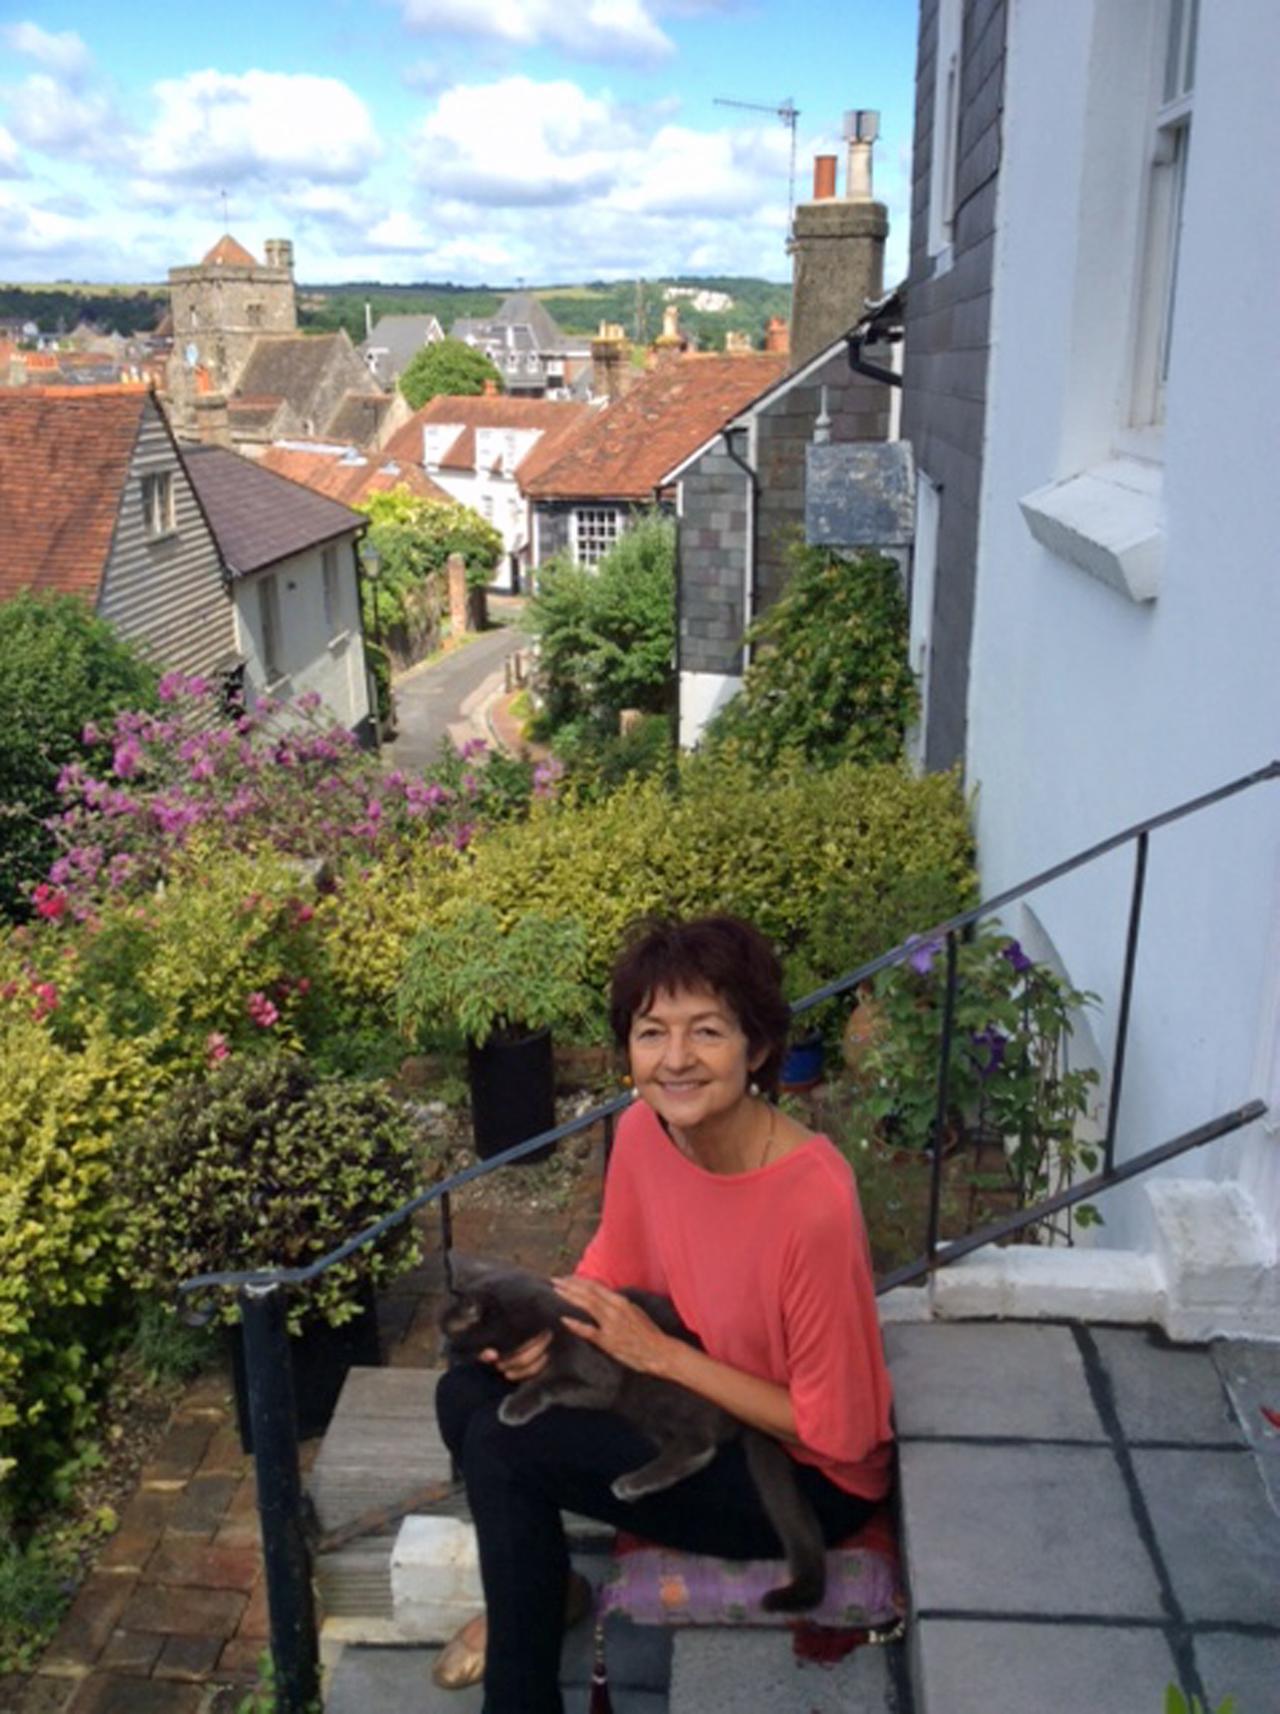 Farbfoto einer Frau in mittleren Jahren, die eine Katze auf dem Schoß hat. Sie sitzt auf einer Treppe, im Hintergrund ist eine Stadtlandschaft zu sehen. Die Frau lächelt.